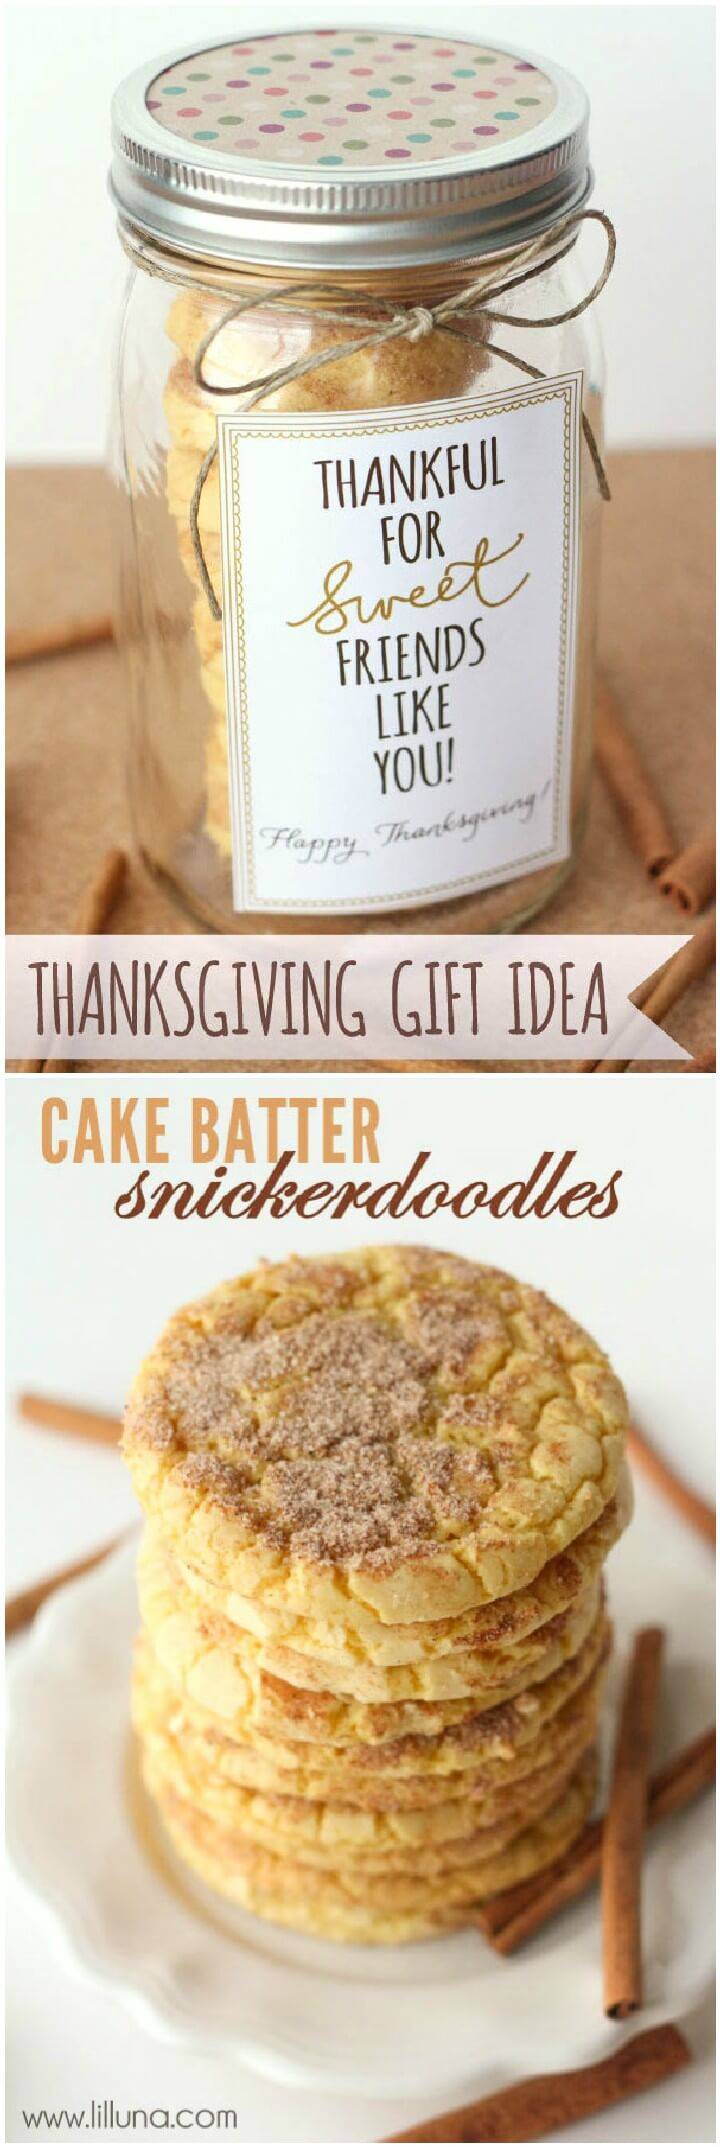 DIY Cake Batter Snickerdoodles Mason Jar Gift